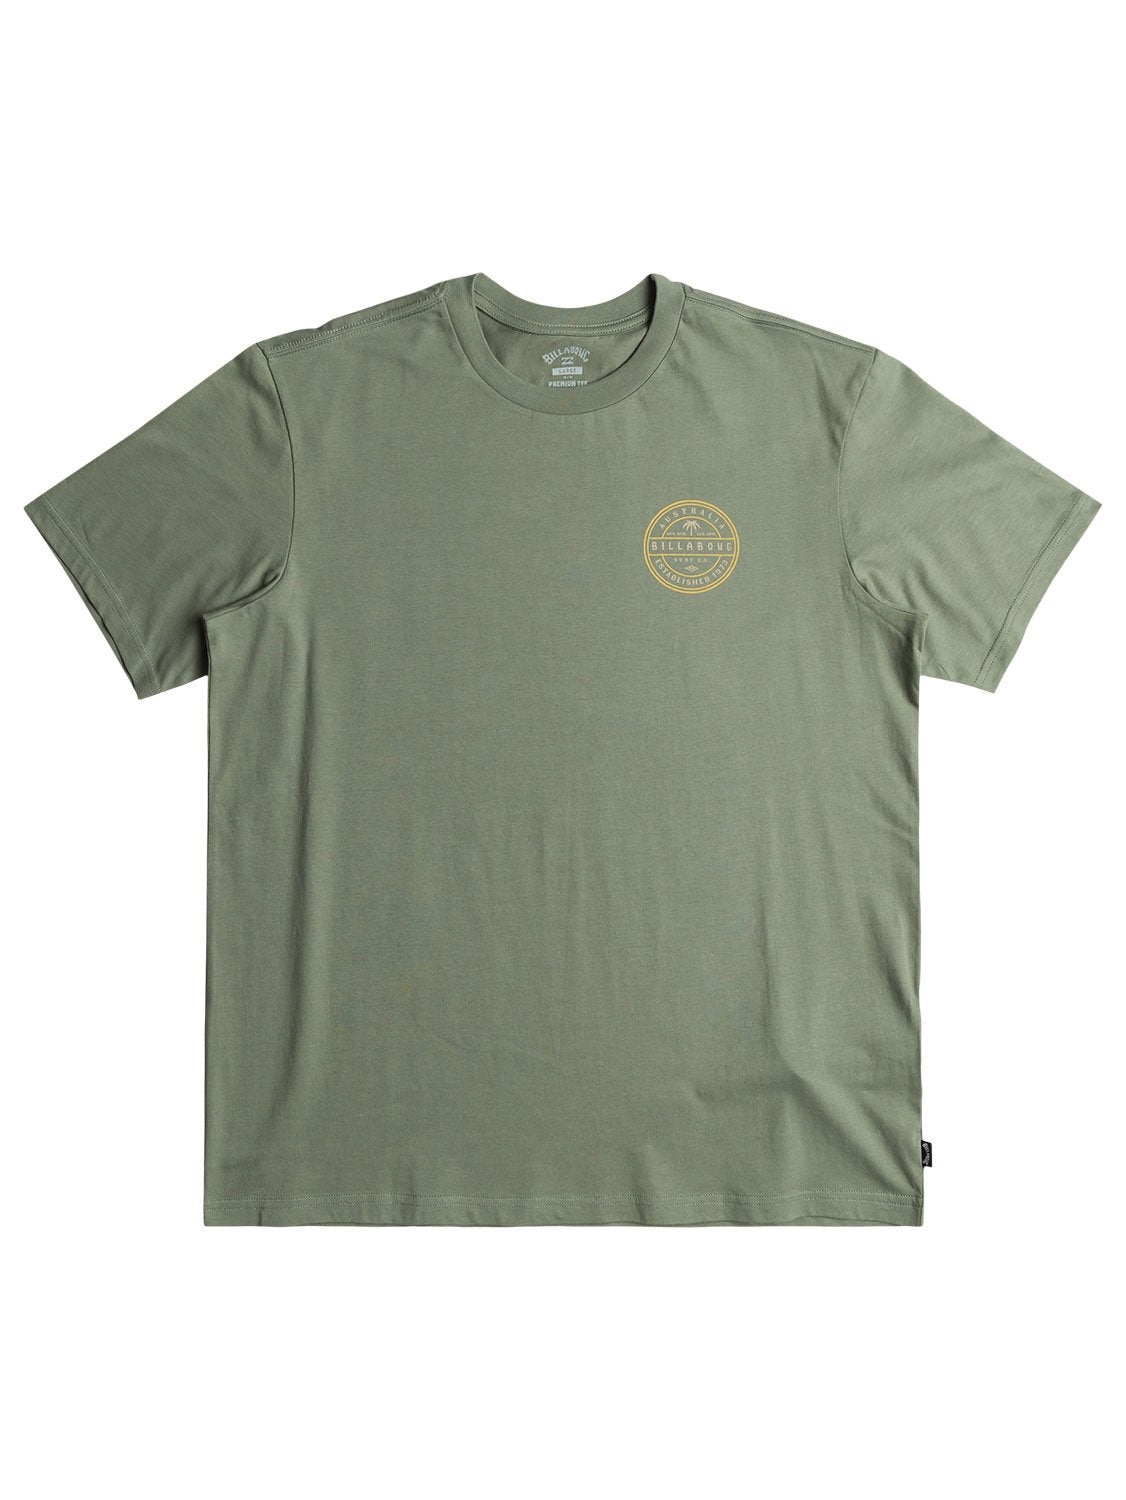 Billabong Men's Monogram T-Shirt